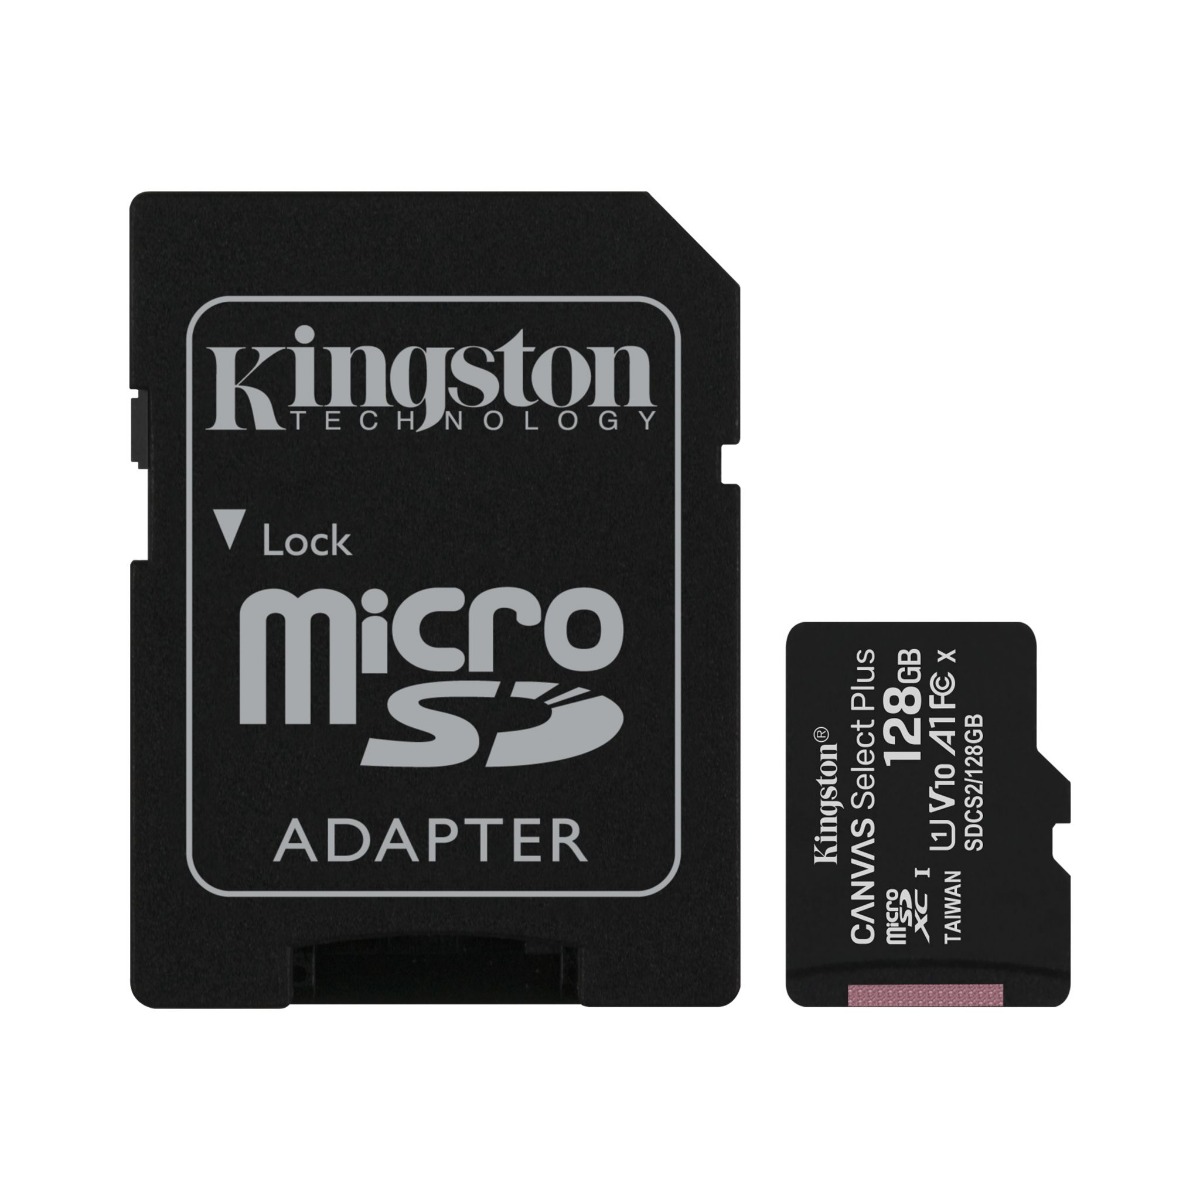 بطاقة ذاكرة مايكرو SDXC كينجستون كانفاس سيلكت  بلس مع محول، 128 جيجا - اسود